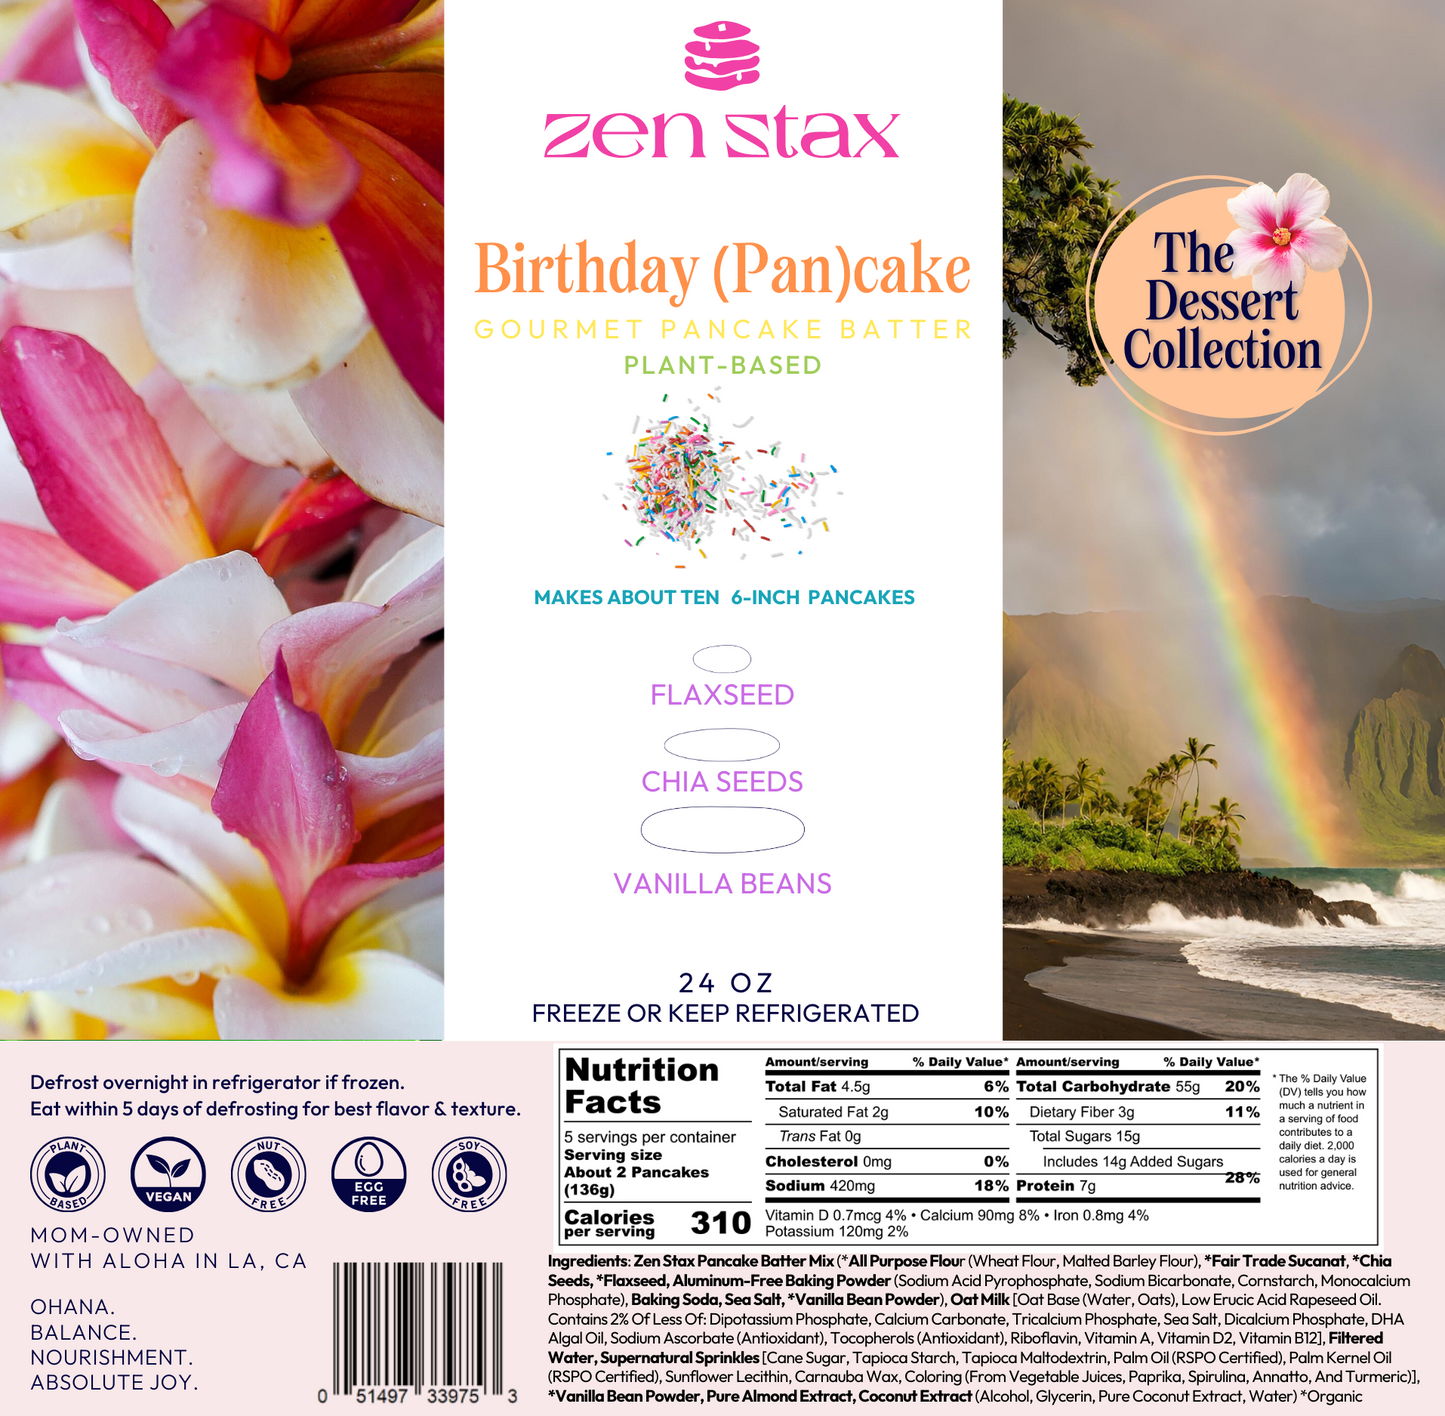 Birthday (Pan)cake